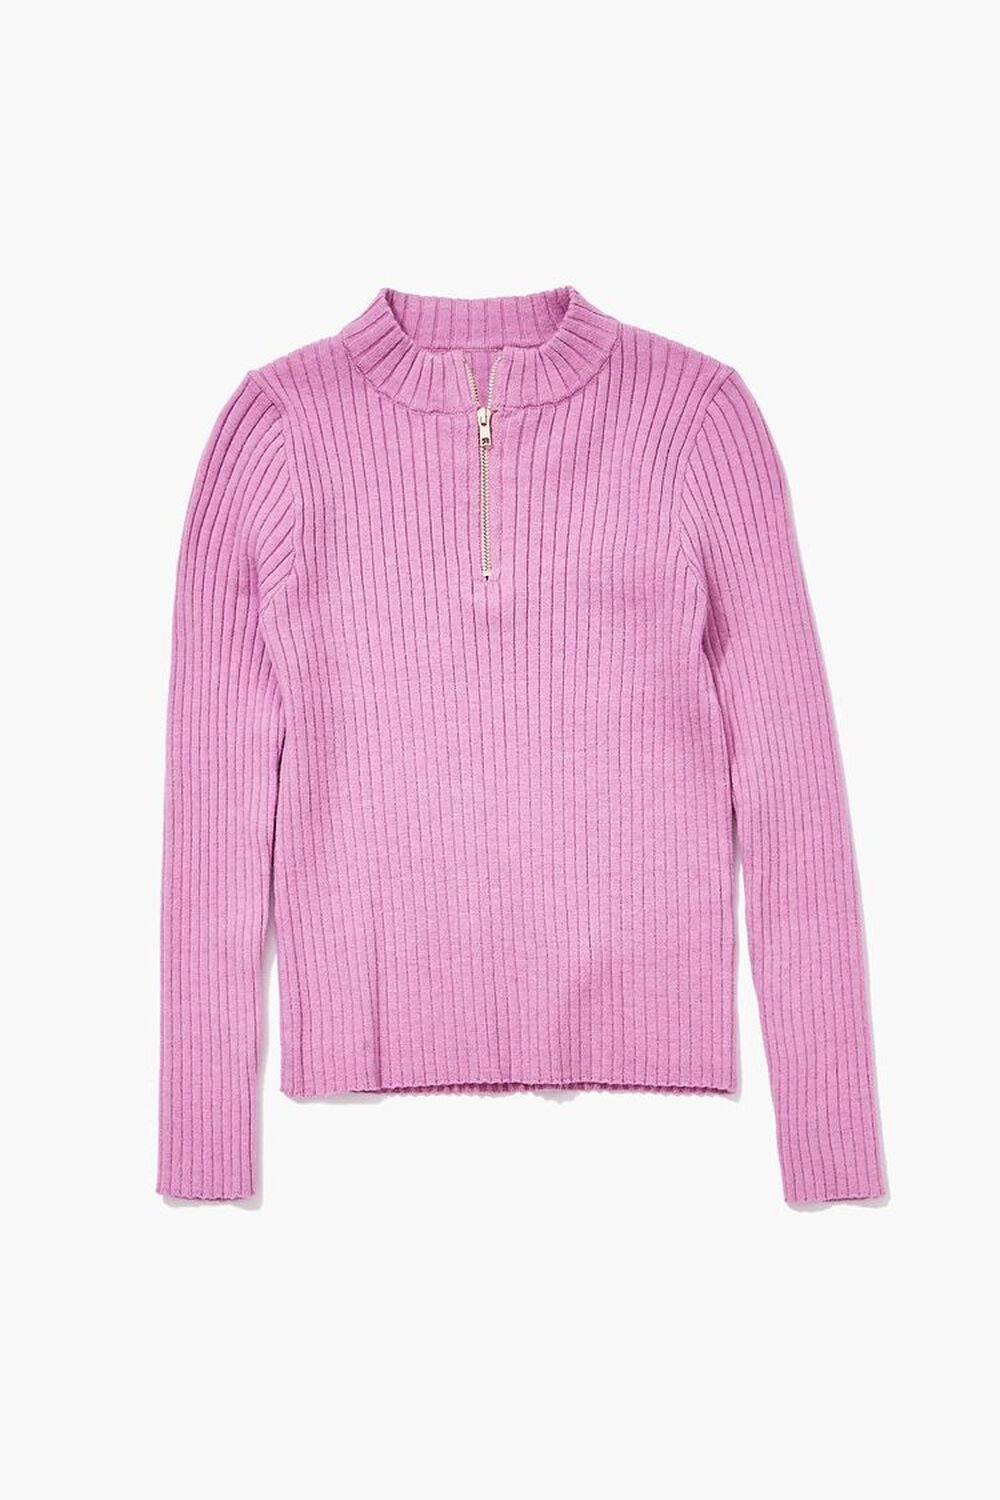 PINK Girls Ribbed Half-Zip Sweater (Kids), image 1